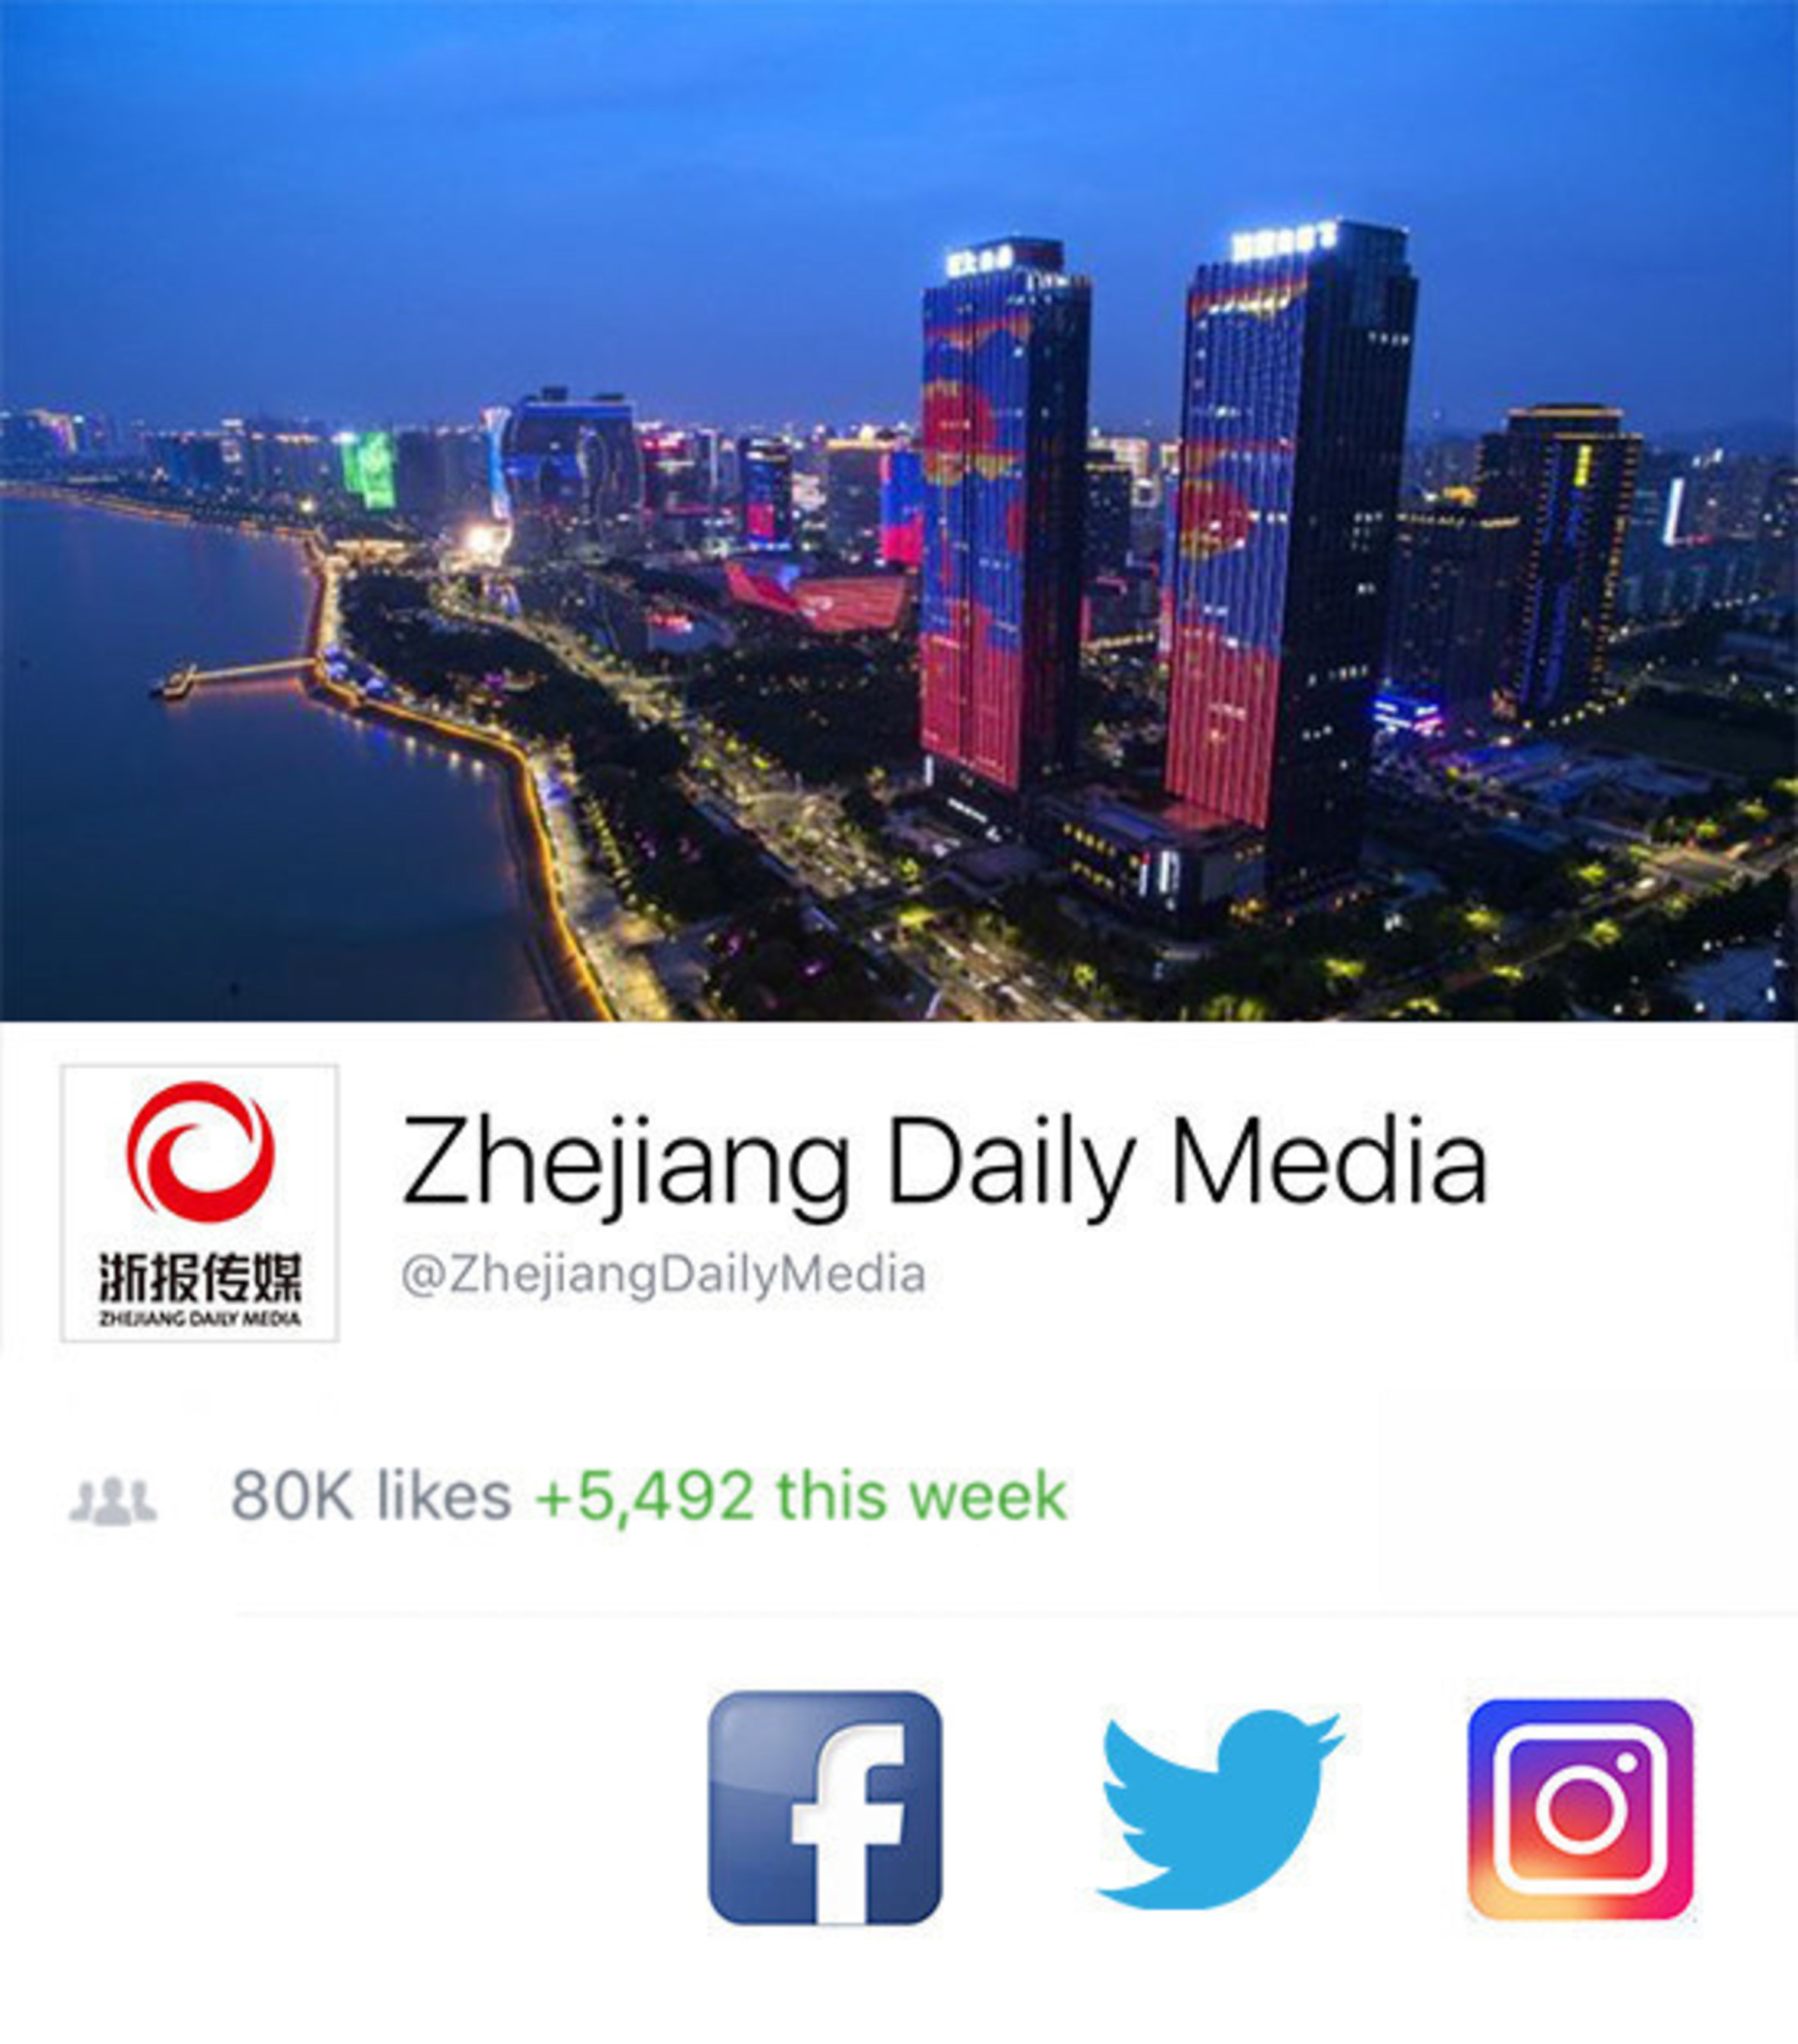 Zhejiang Daily Media